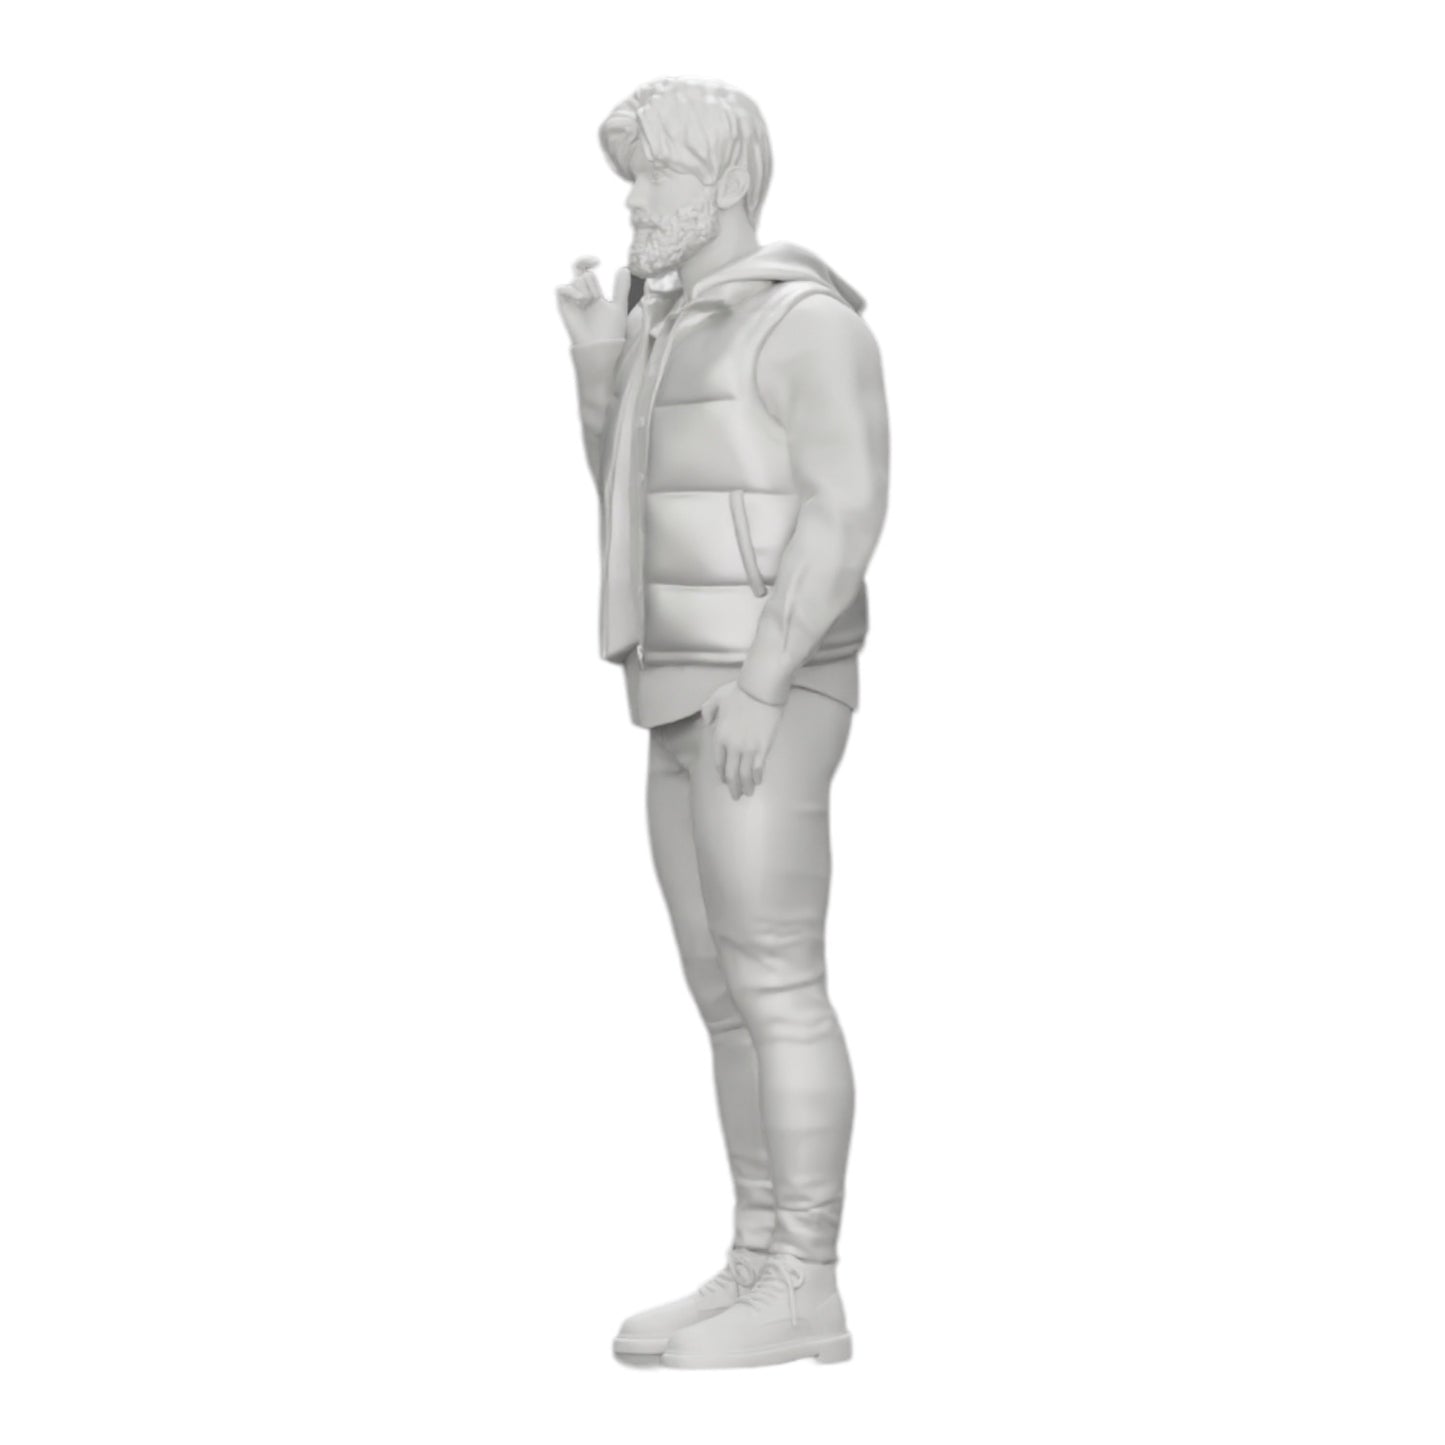 Diorama Modellbau Produktfoto 0: Mann mit Bart und Jacke steht selbstbewusst da (Ref Nr. A24)